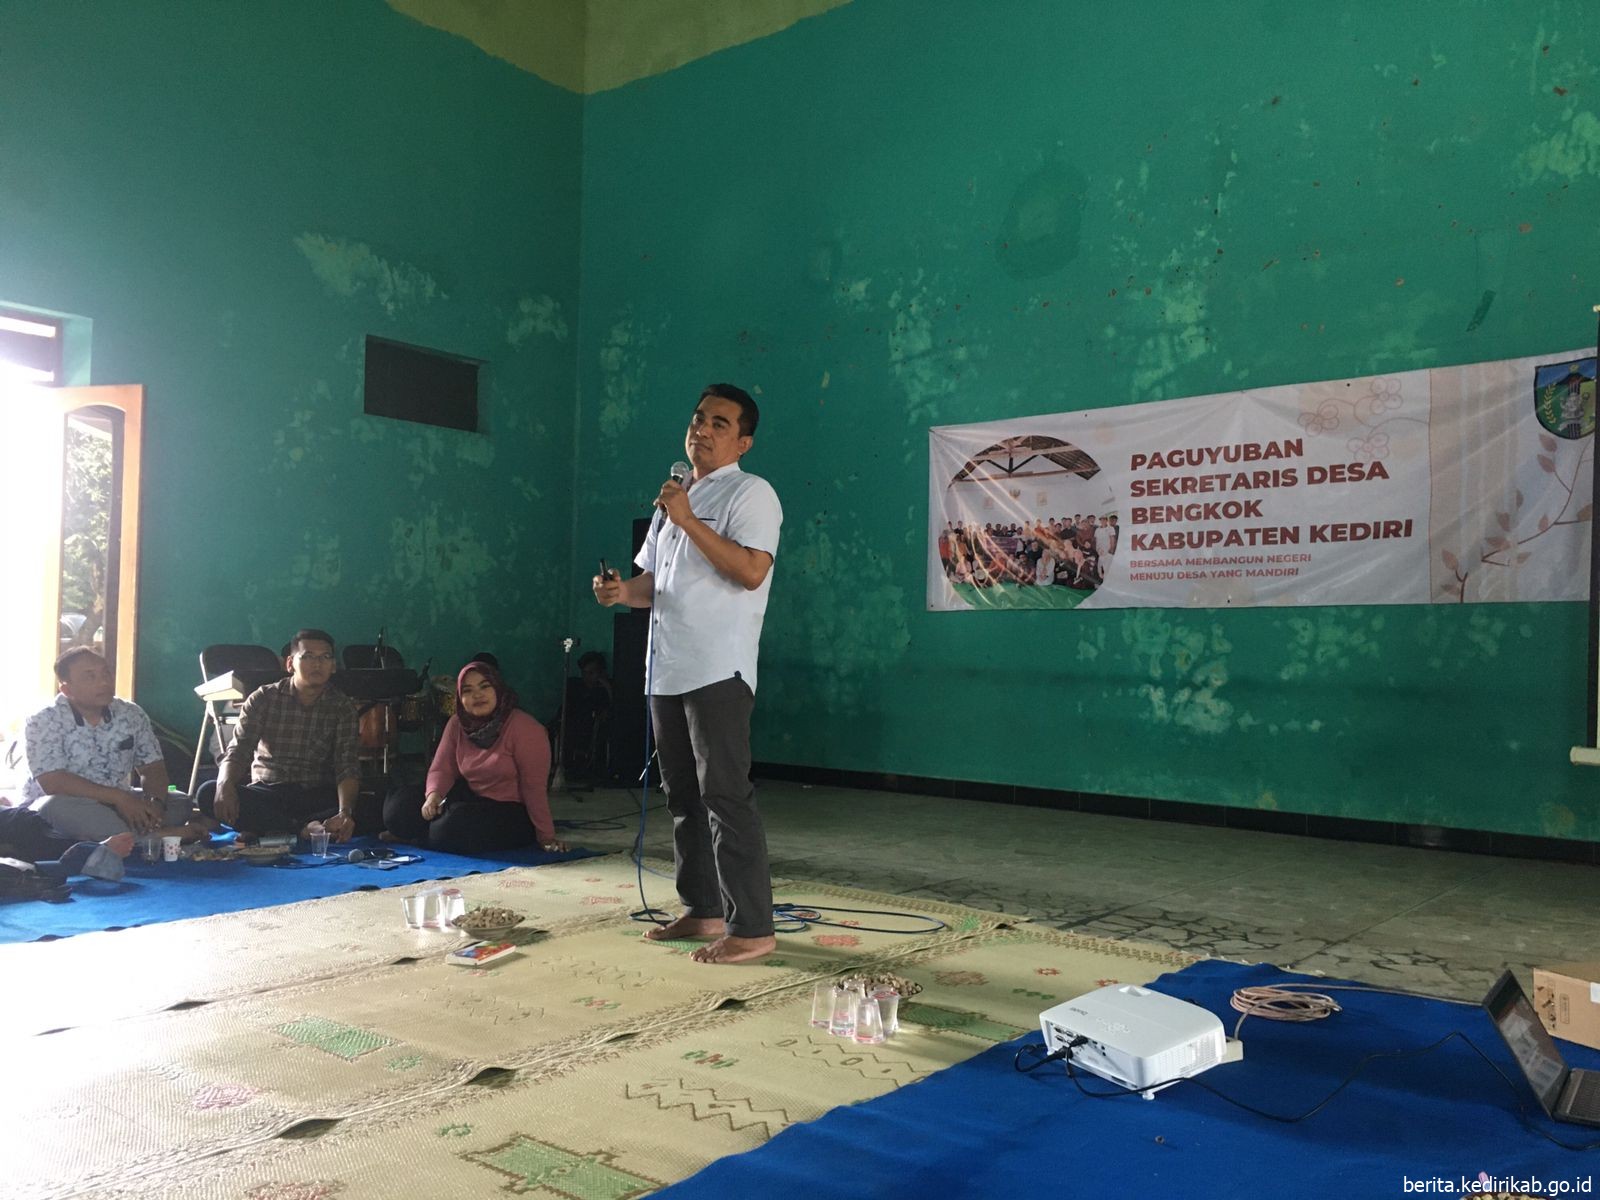 Paguyuban Sekretaris Desa Bengkok Kabupaten Kediri Terus Bersinergi Menggali Wawasan dan Berinformasi